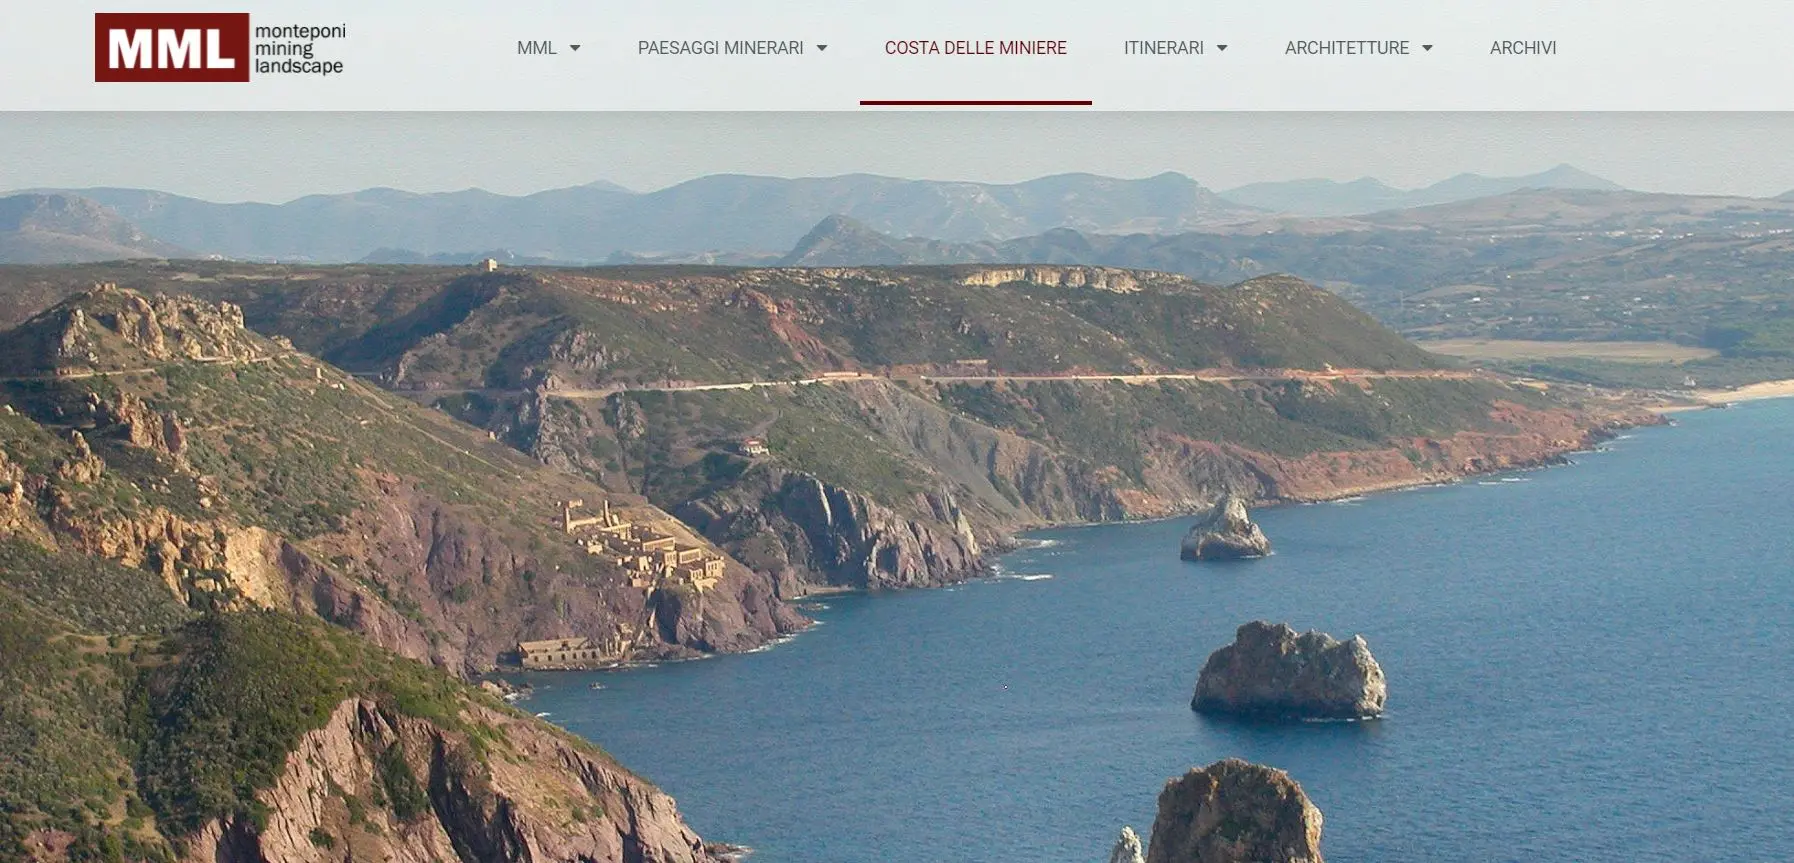 L'home page del sito monteponi.it